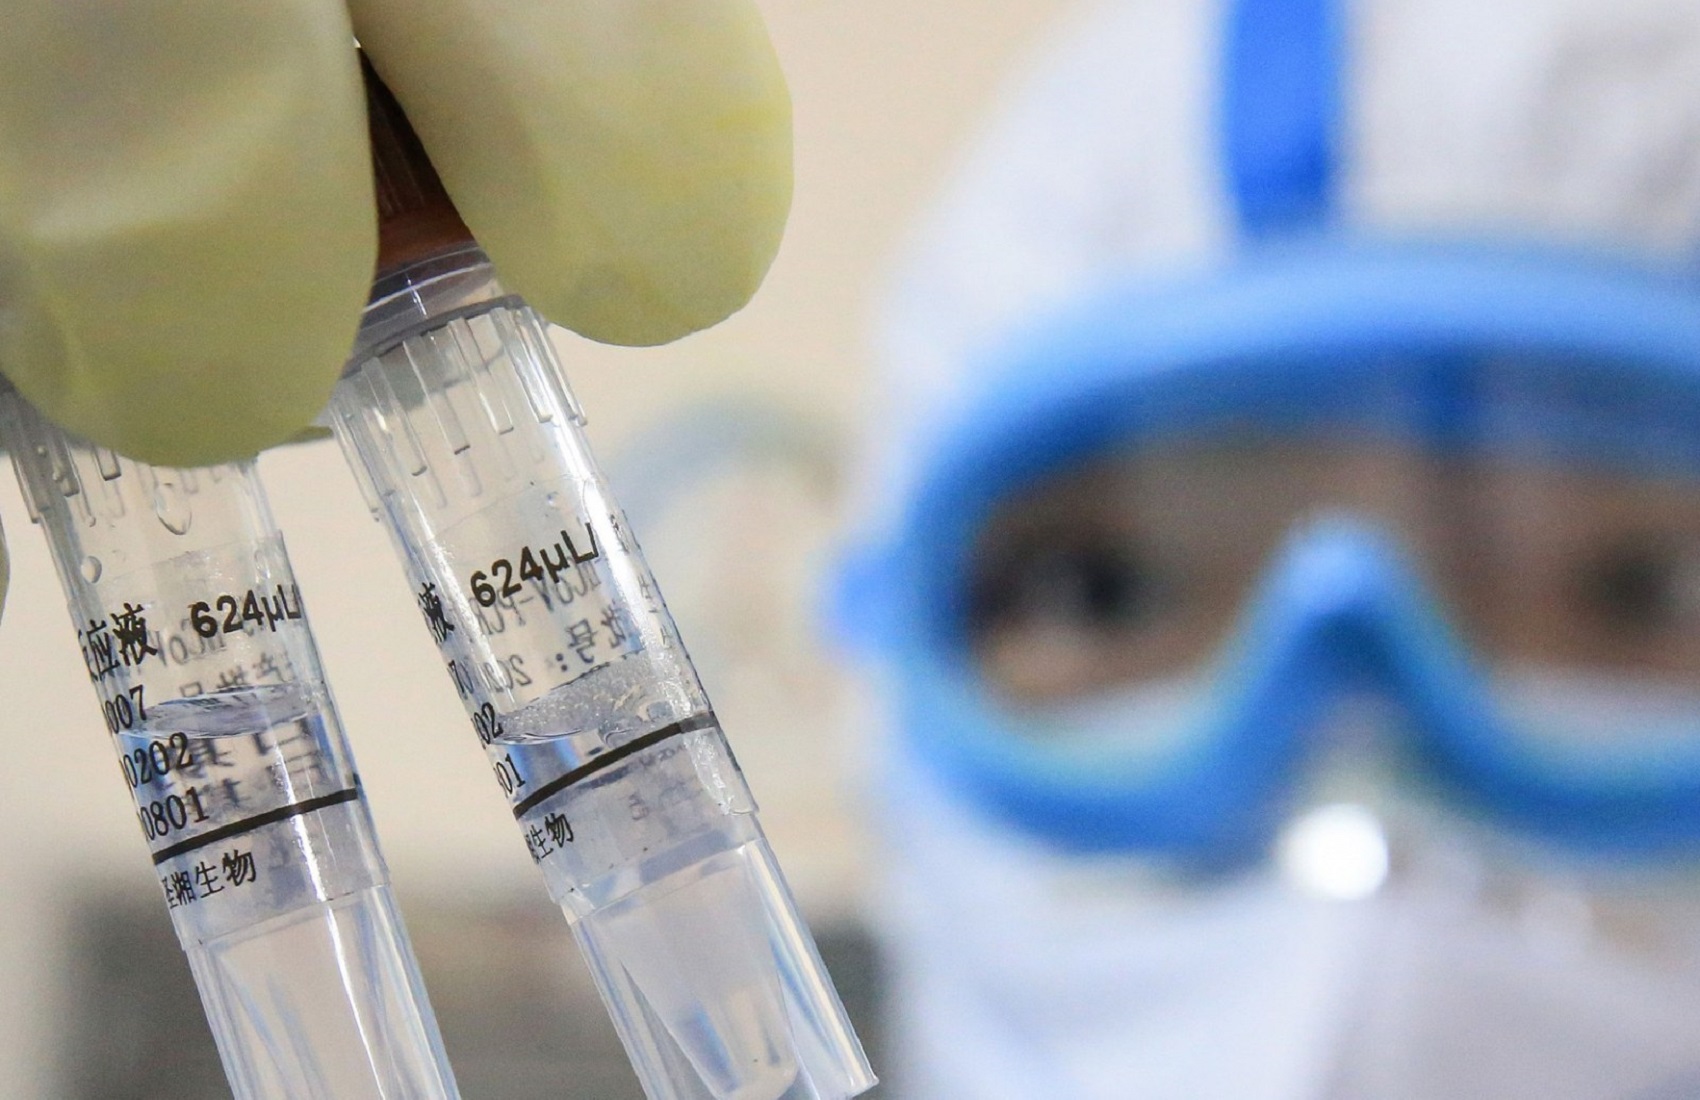 Украина получила реагенты для тестирования на коронавирус